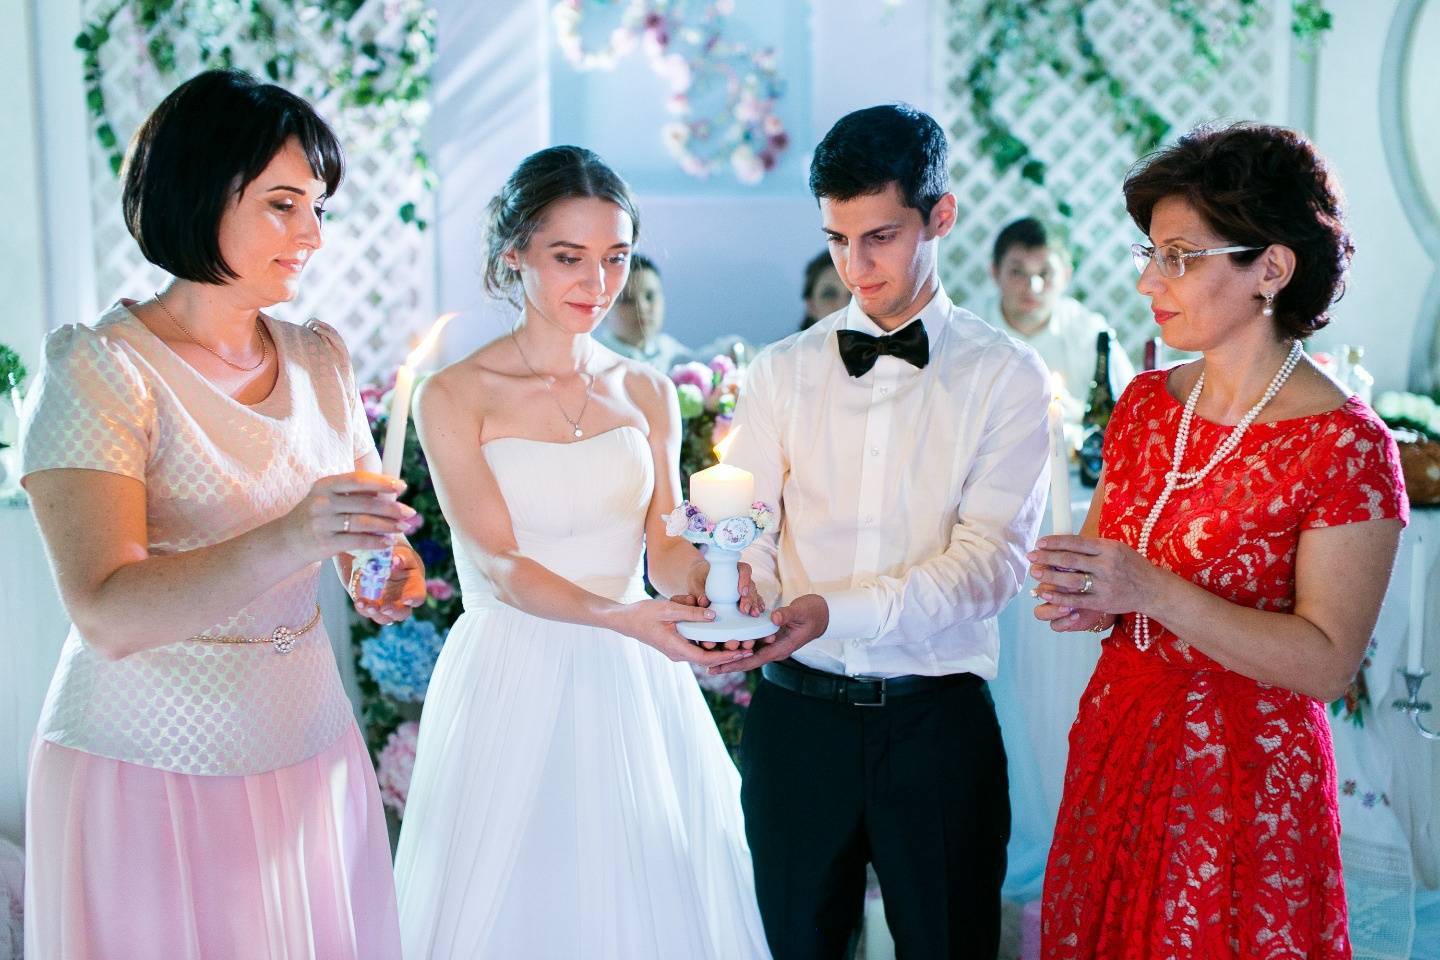 Подарок жениху от невесты — традиционная романтика или приятная неожиданность?